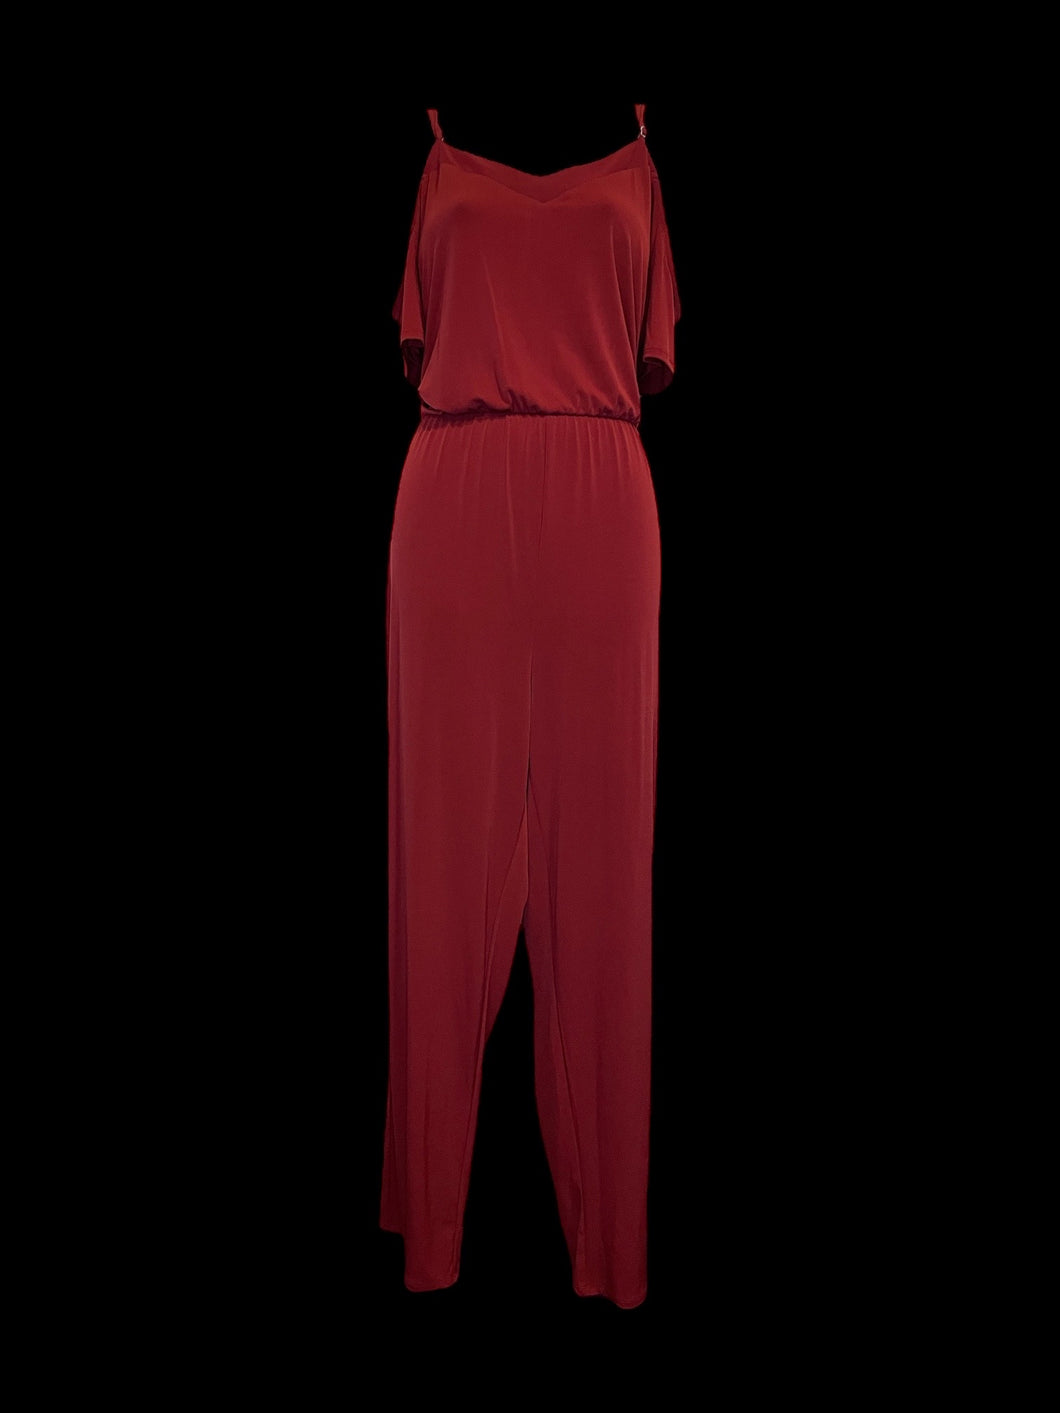 L Burgundy short sleeve cold shoulder v-neckline wide leg jumpsuit w/ adjustable straps, & elastic waist